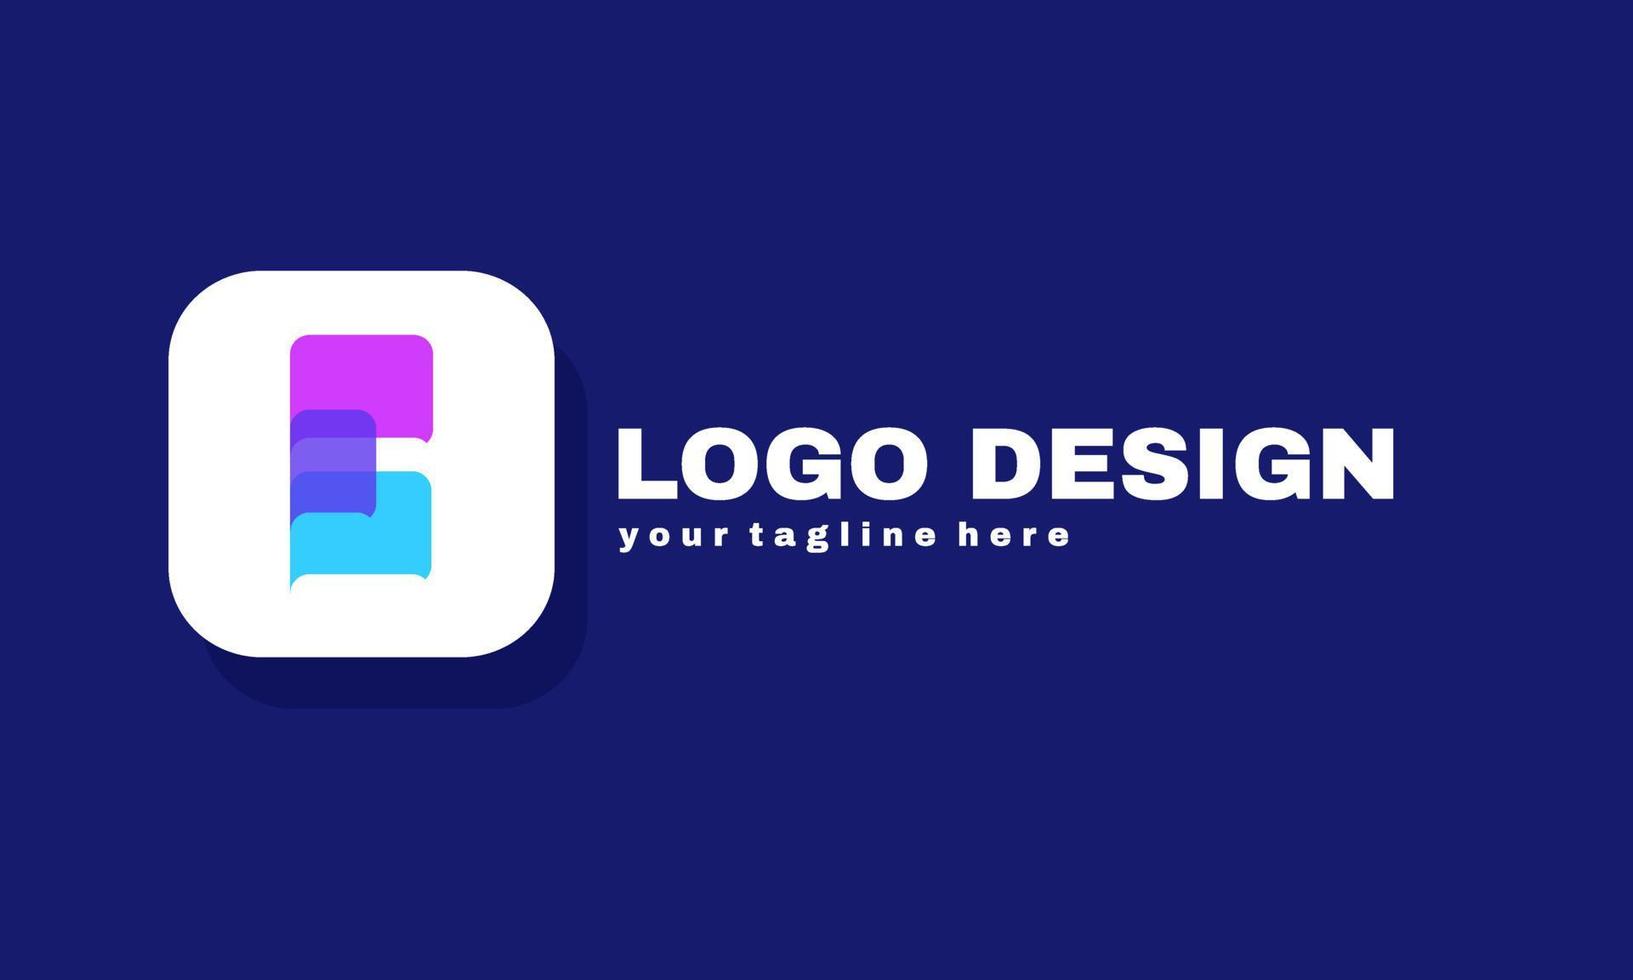 voorraad vector abstracte letter e logo met gradiënt ontwerpconcept van toekomst en toekomst?